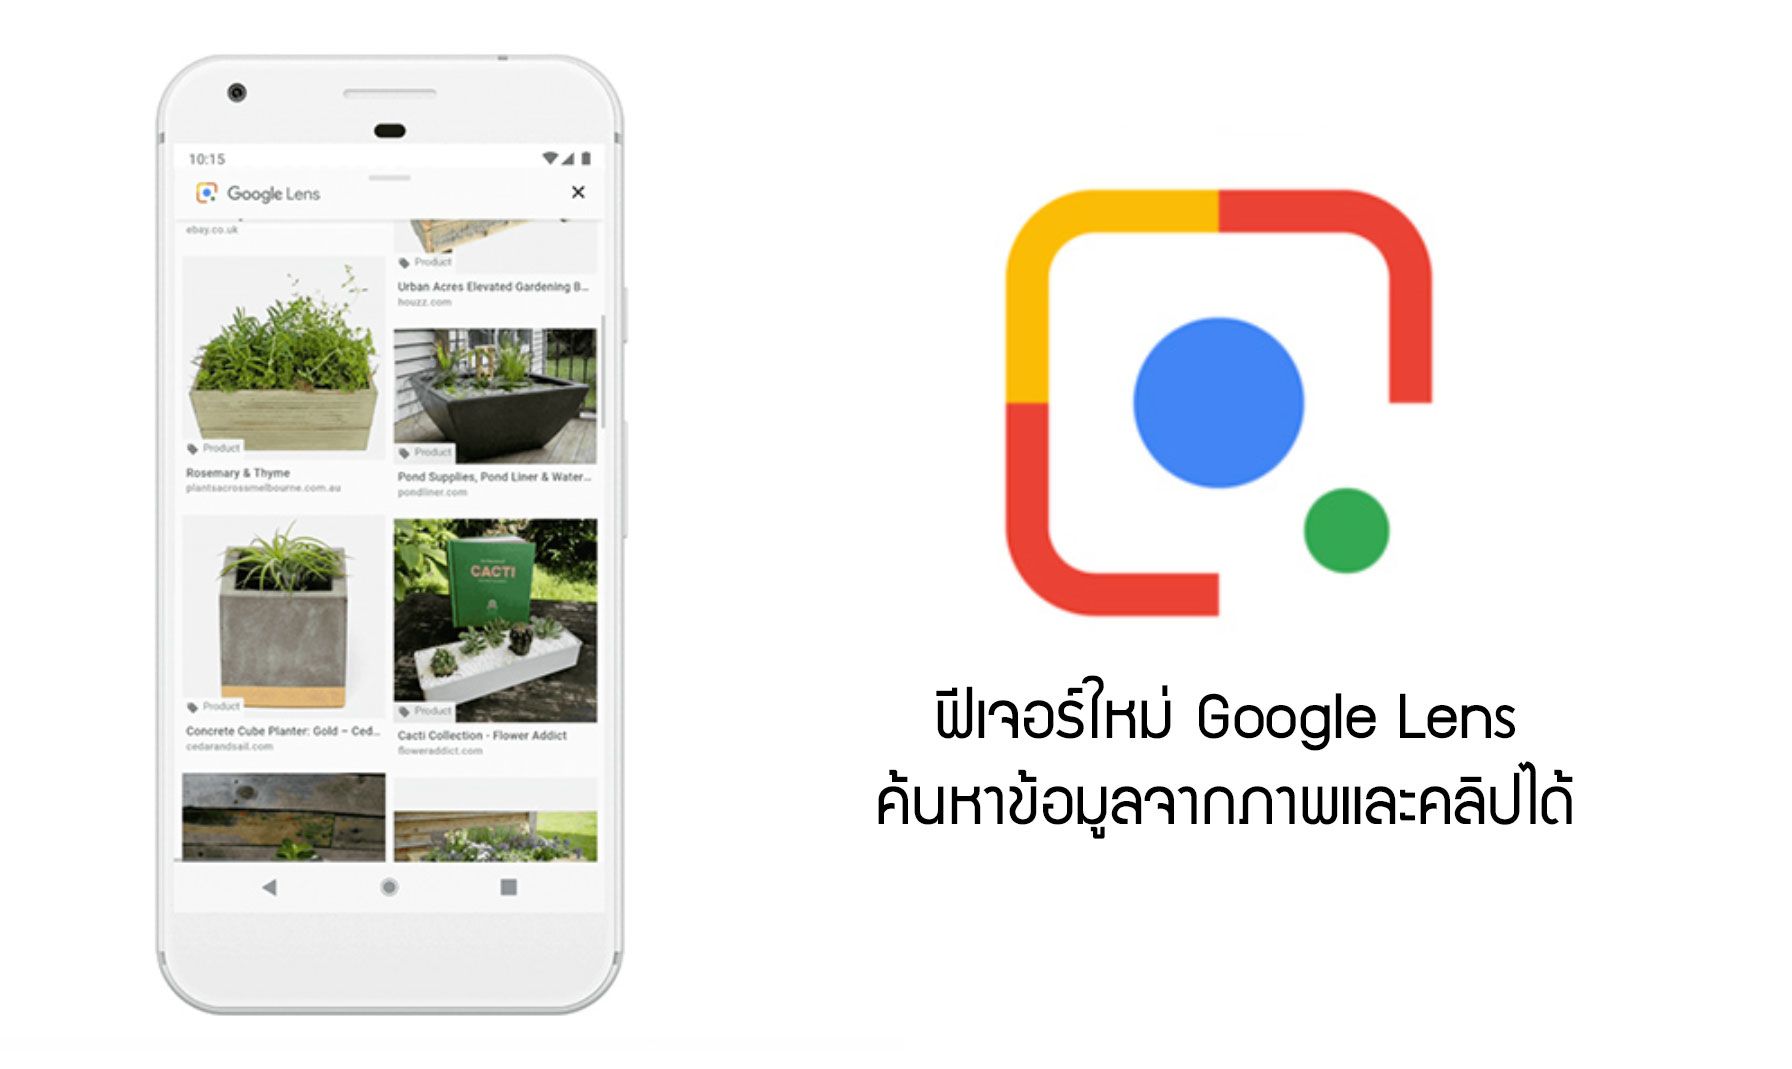 Google เปิดตัวฟีเจอร์ใหม่ของ Google Lens ค้นหาข้อมูลได้จากภาพ หรือสิ่งของในภาพ